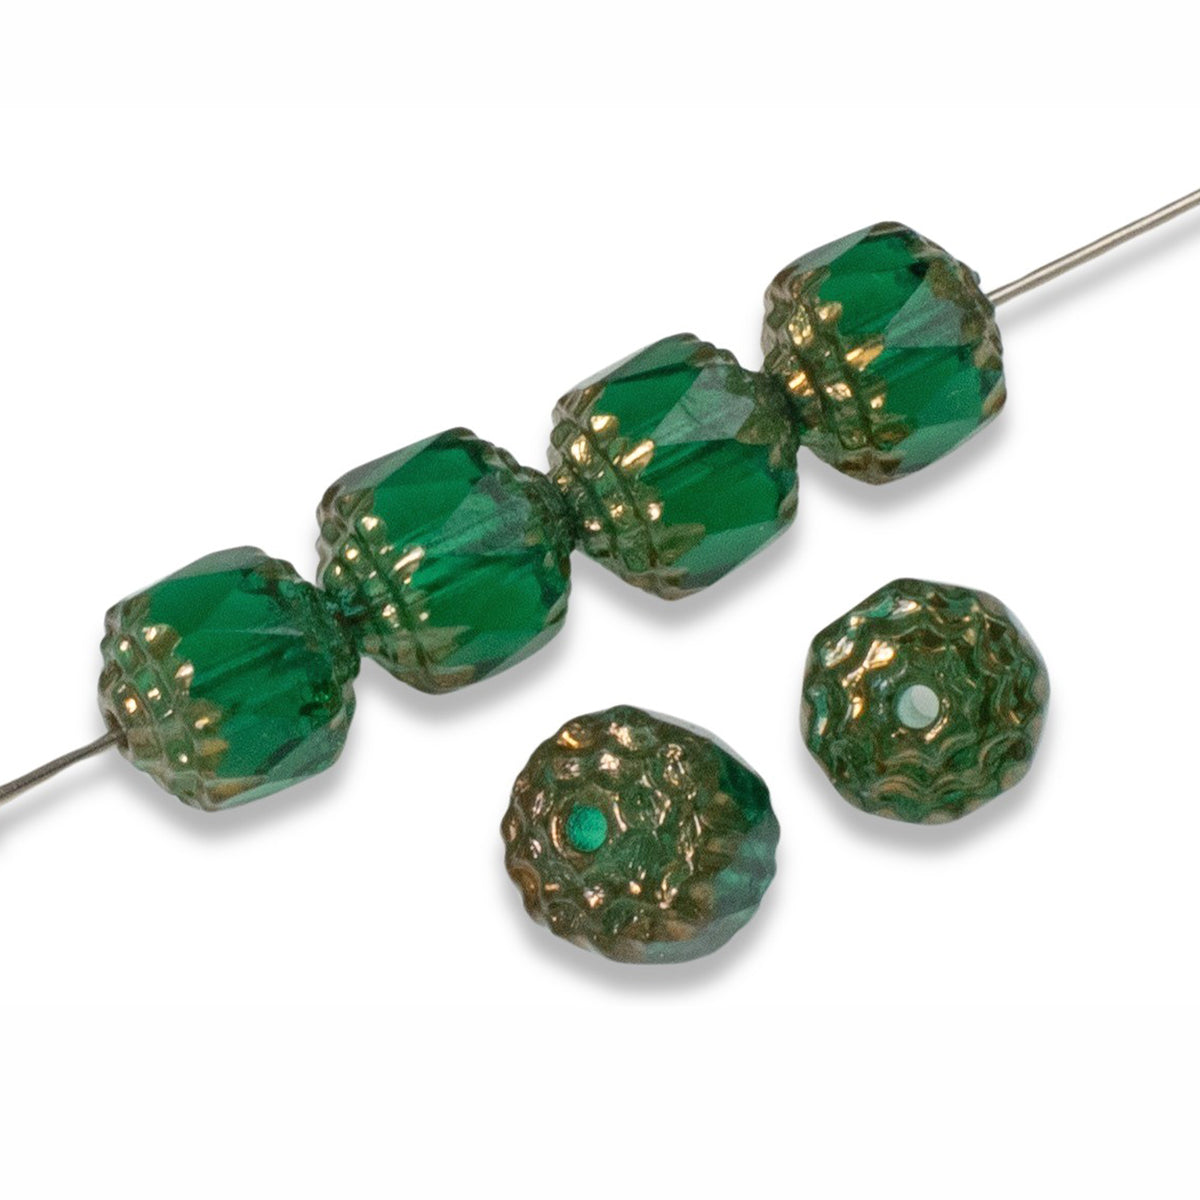 14mm Czech Grass Green Faceted Beads-0693-97